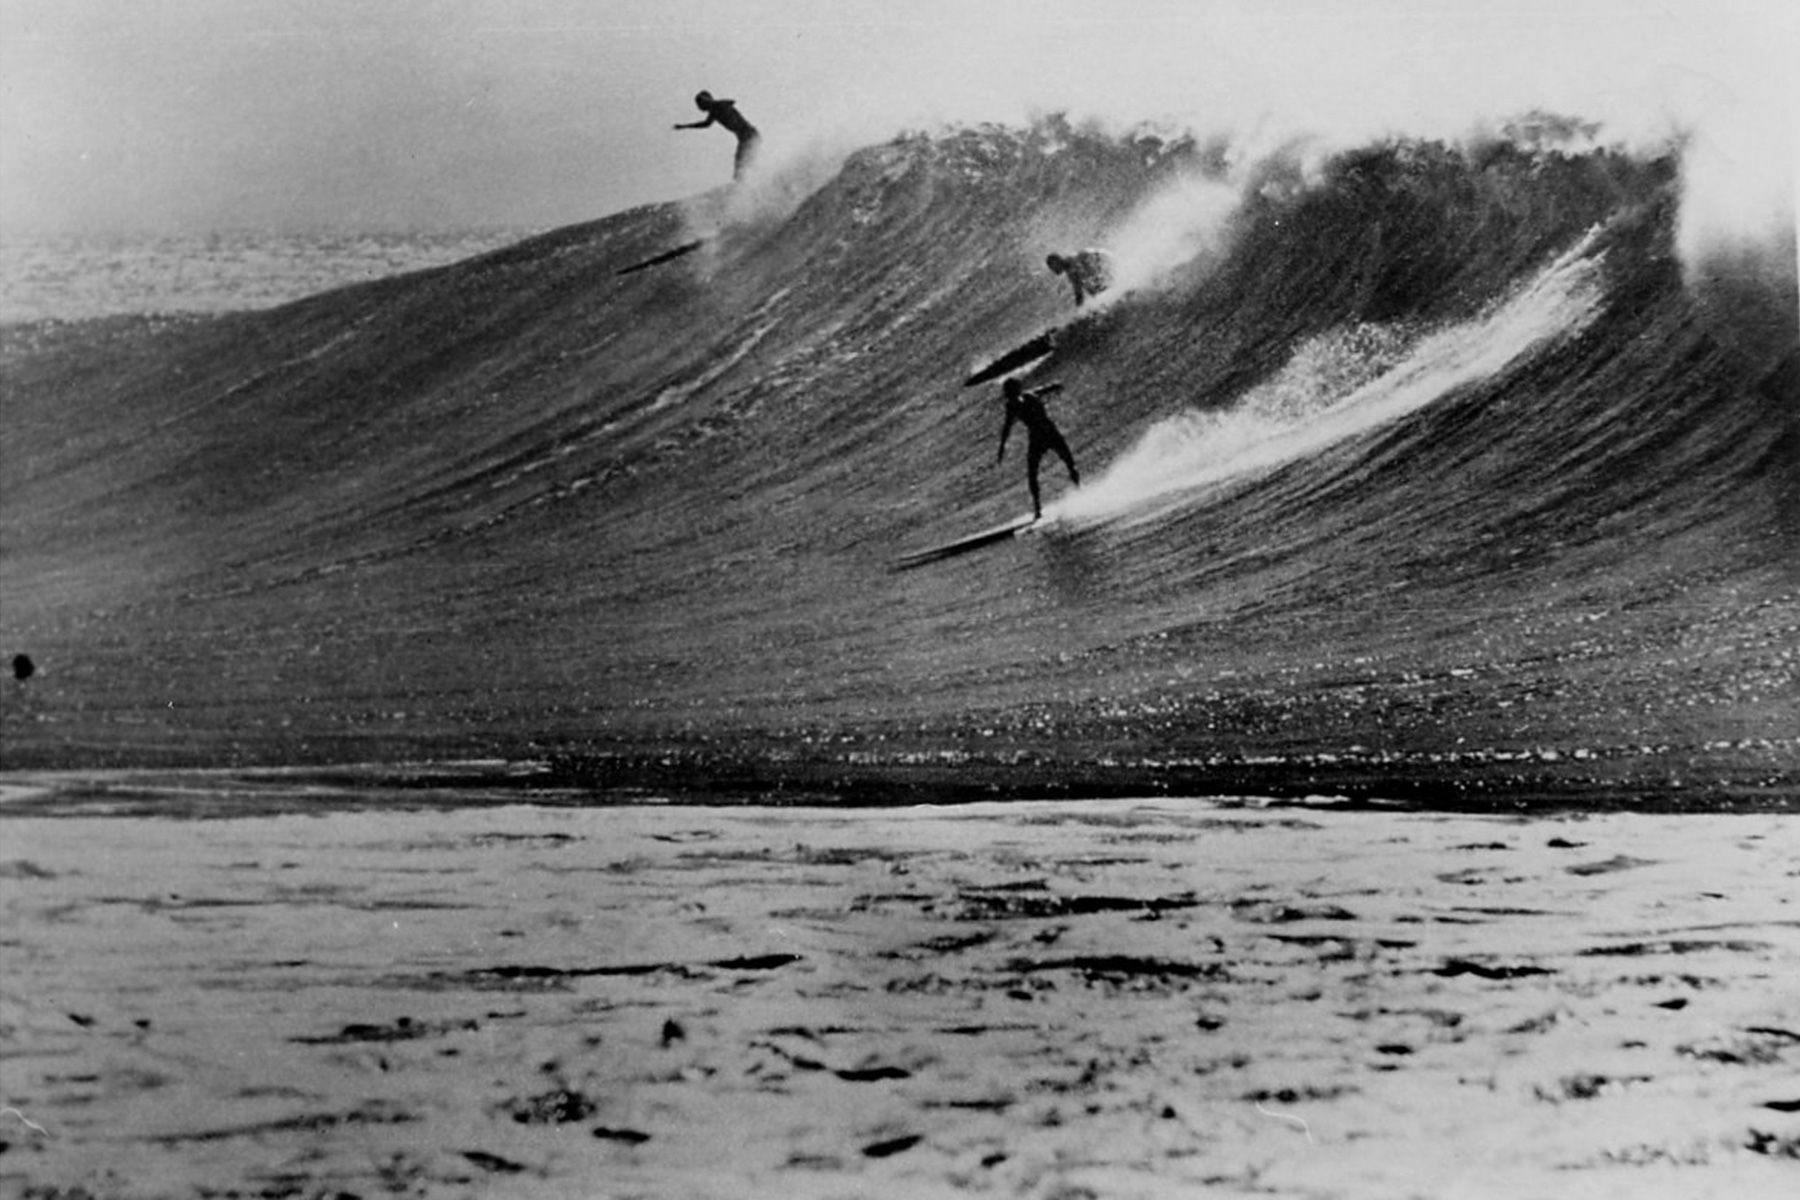 surfers at waimea bay, oahu, 1960s